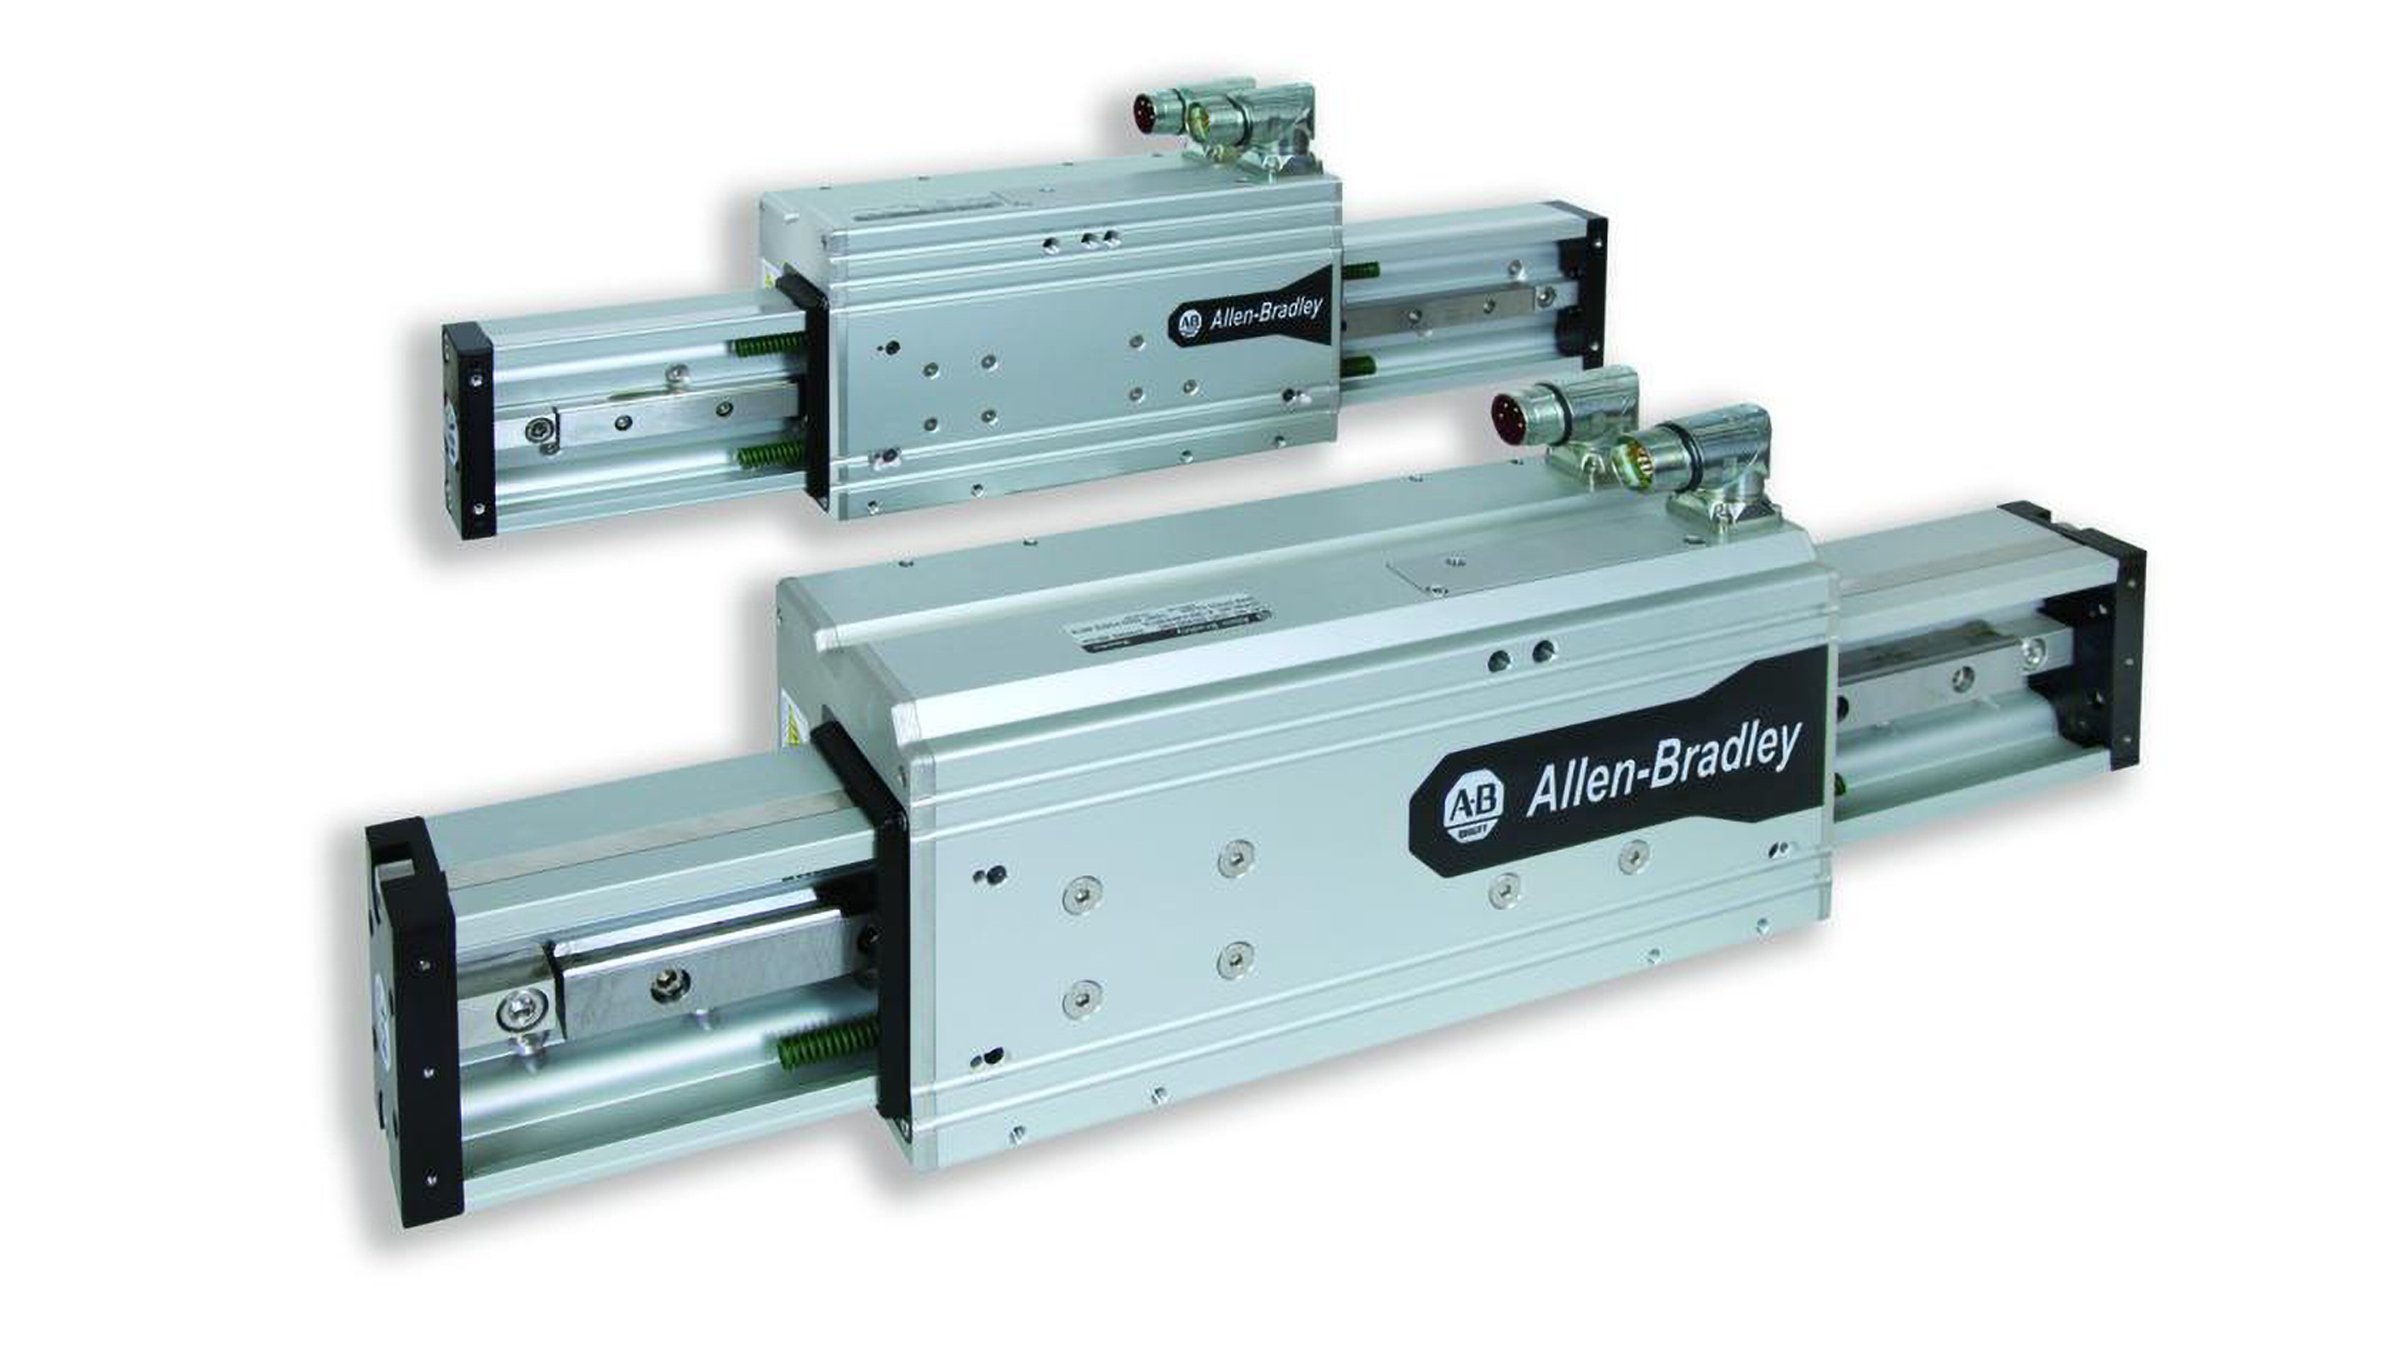 Os atuadores lineares integrados cód. cat. LDAT da Allen-Bradley fornecem controle de movimento linear de alta velocidade, transporte de carga, pronto para uso e são capazes de empurrar, puxar ou carregar uma carga.